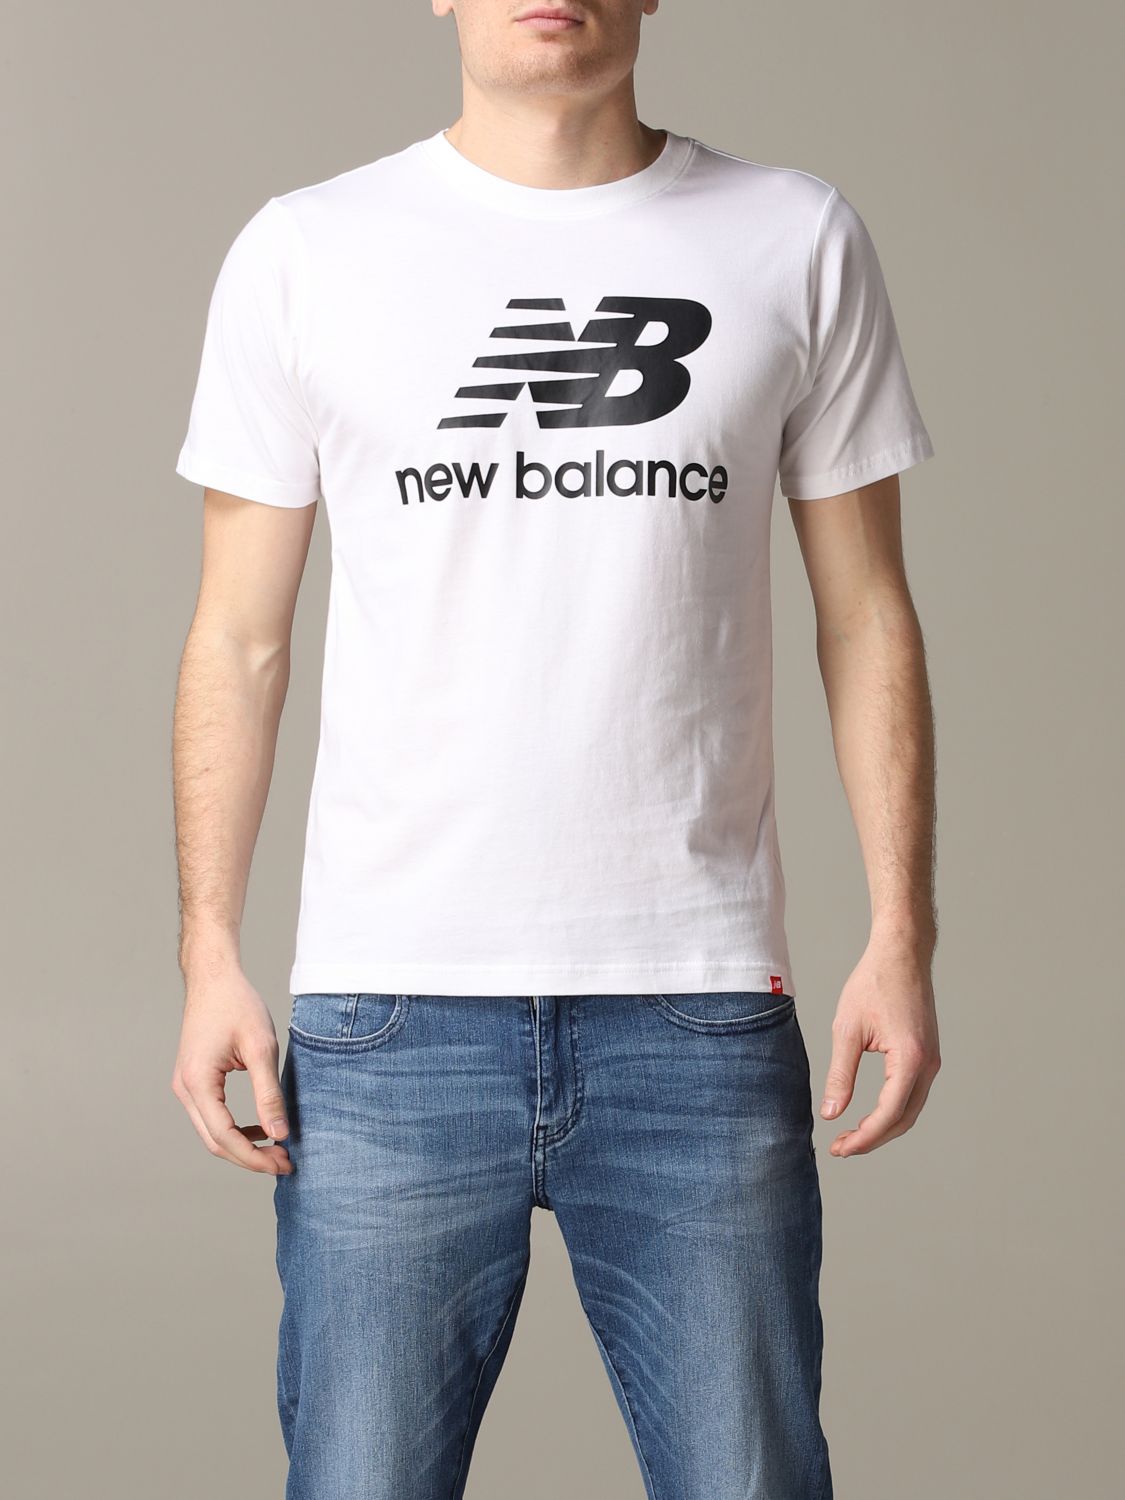 new balance tee shirt homme